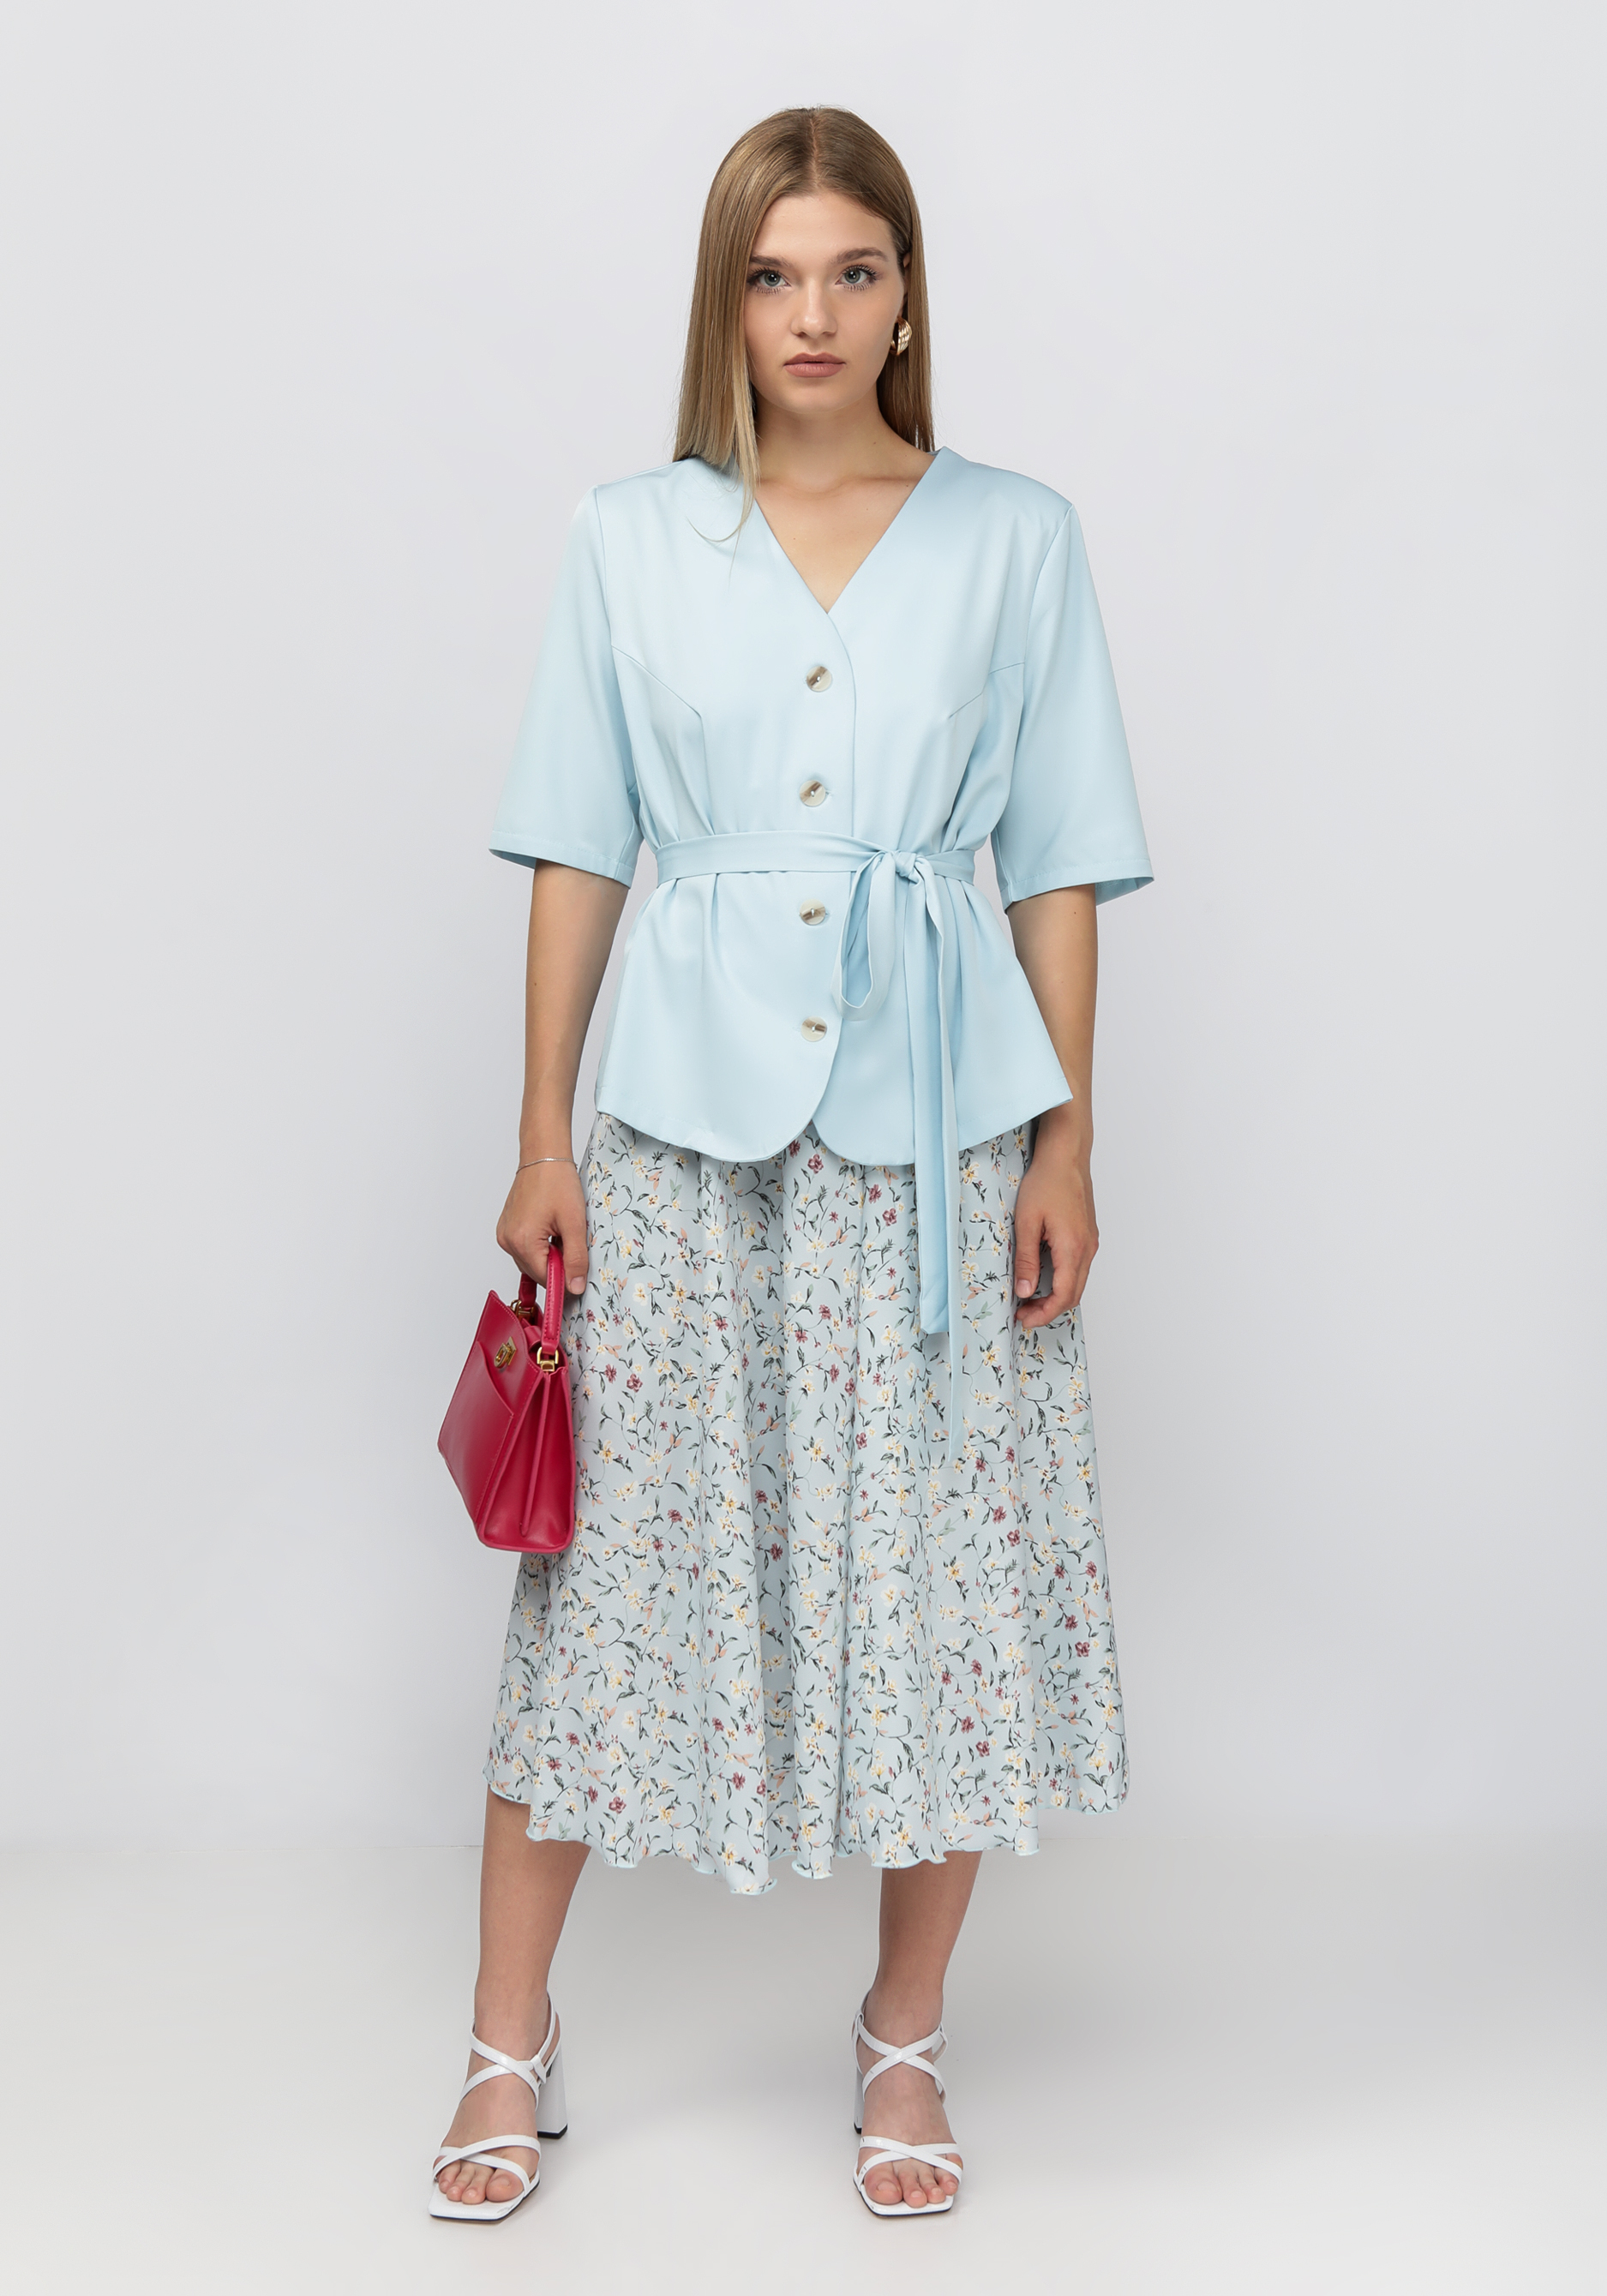 Комплект: жакет+юбка c цветочным принтом Bianka Modeno, размер 62